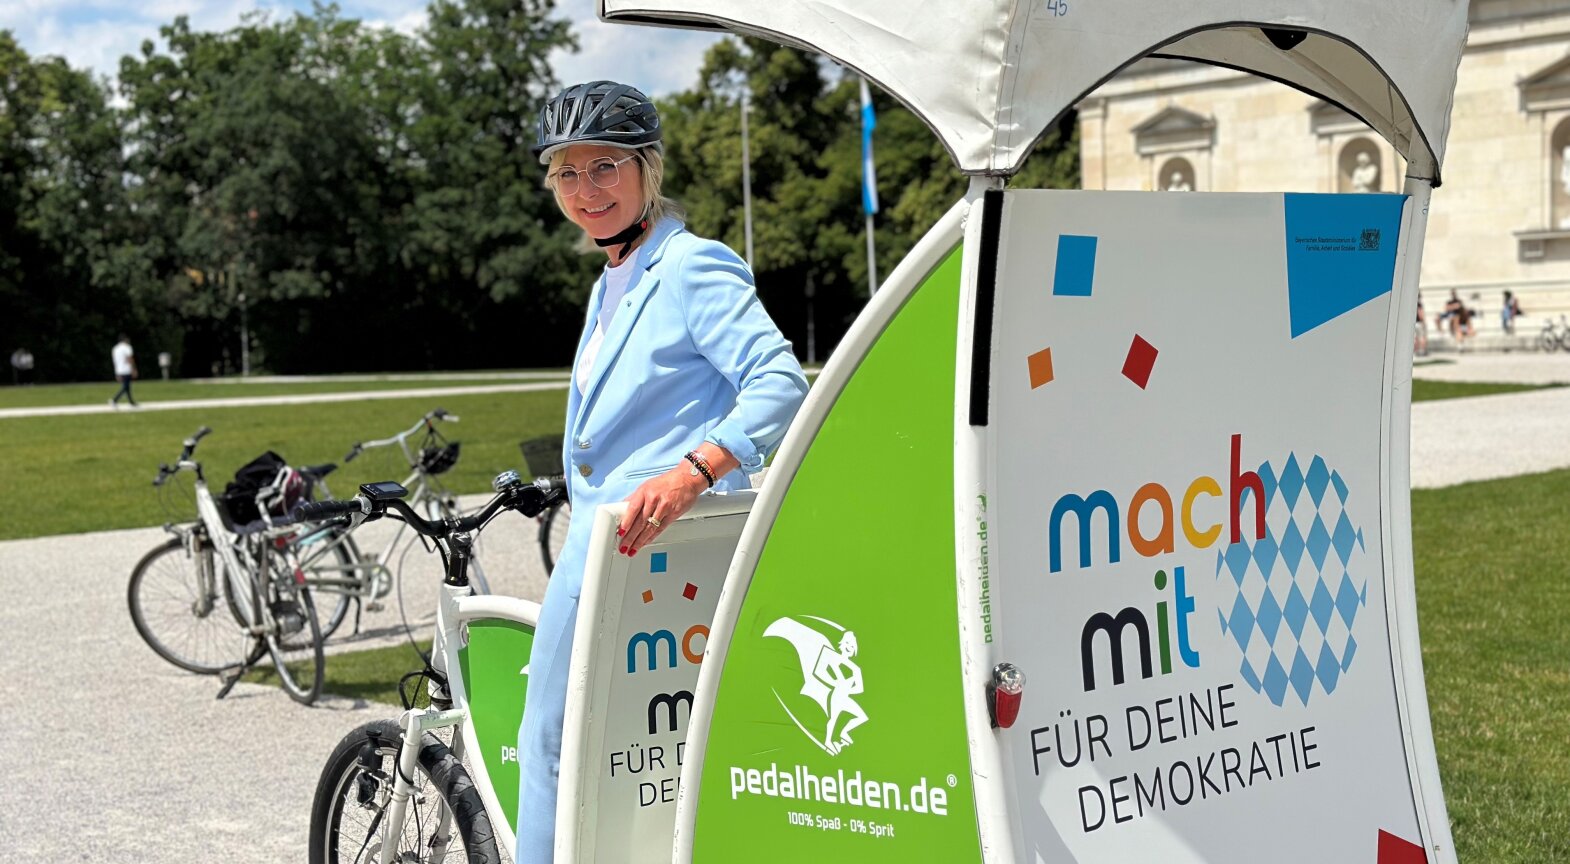 Das Foto zeigt Sozialministerin Ulrike Scharf bei ihrer Rikscha-Fahrt durch München am Etappenziel Königsplatz.